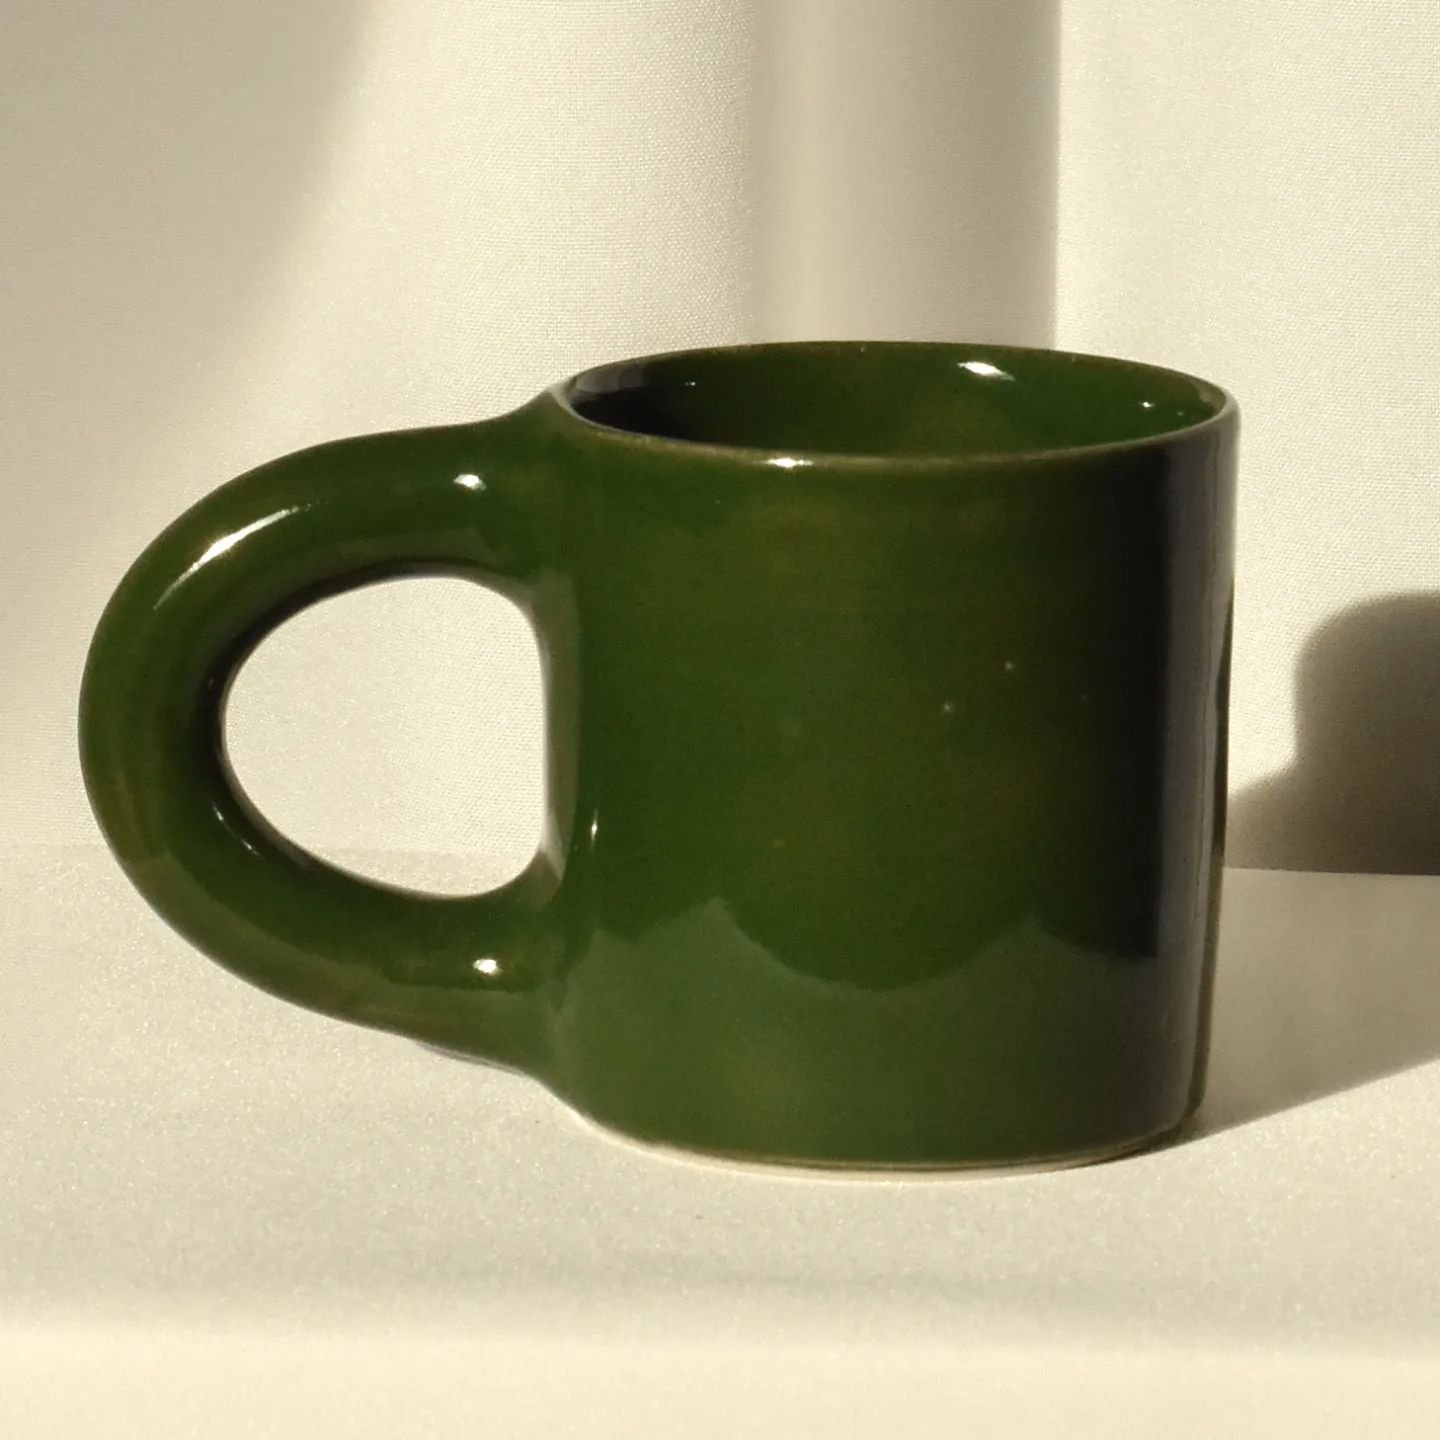 L'imperfection des courbes du Mug Parfait, qui se pose confortablement entre vos mains